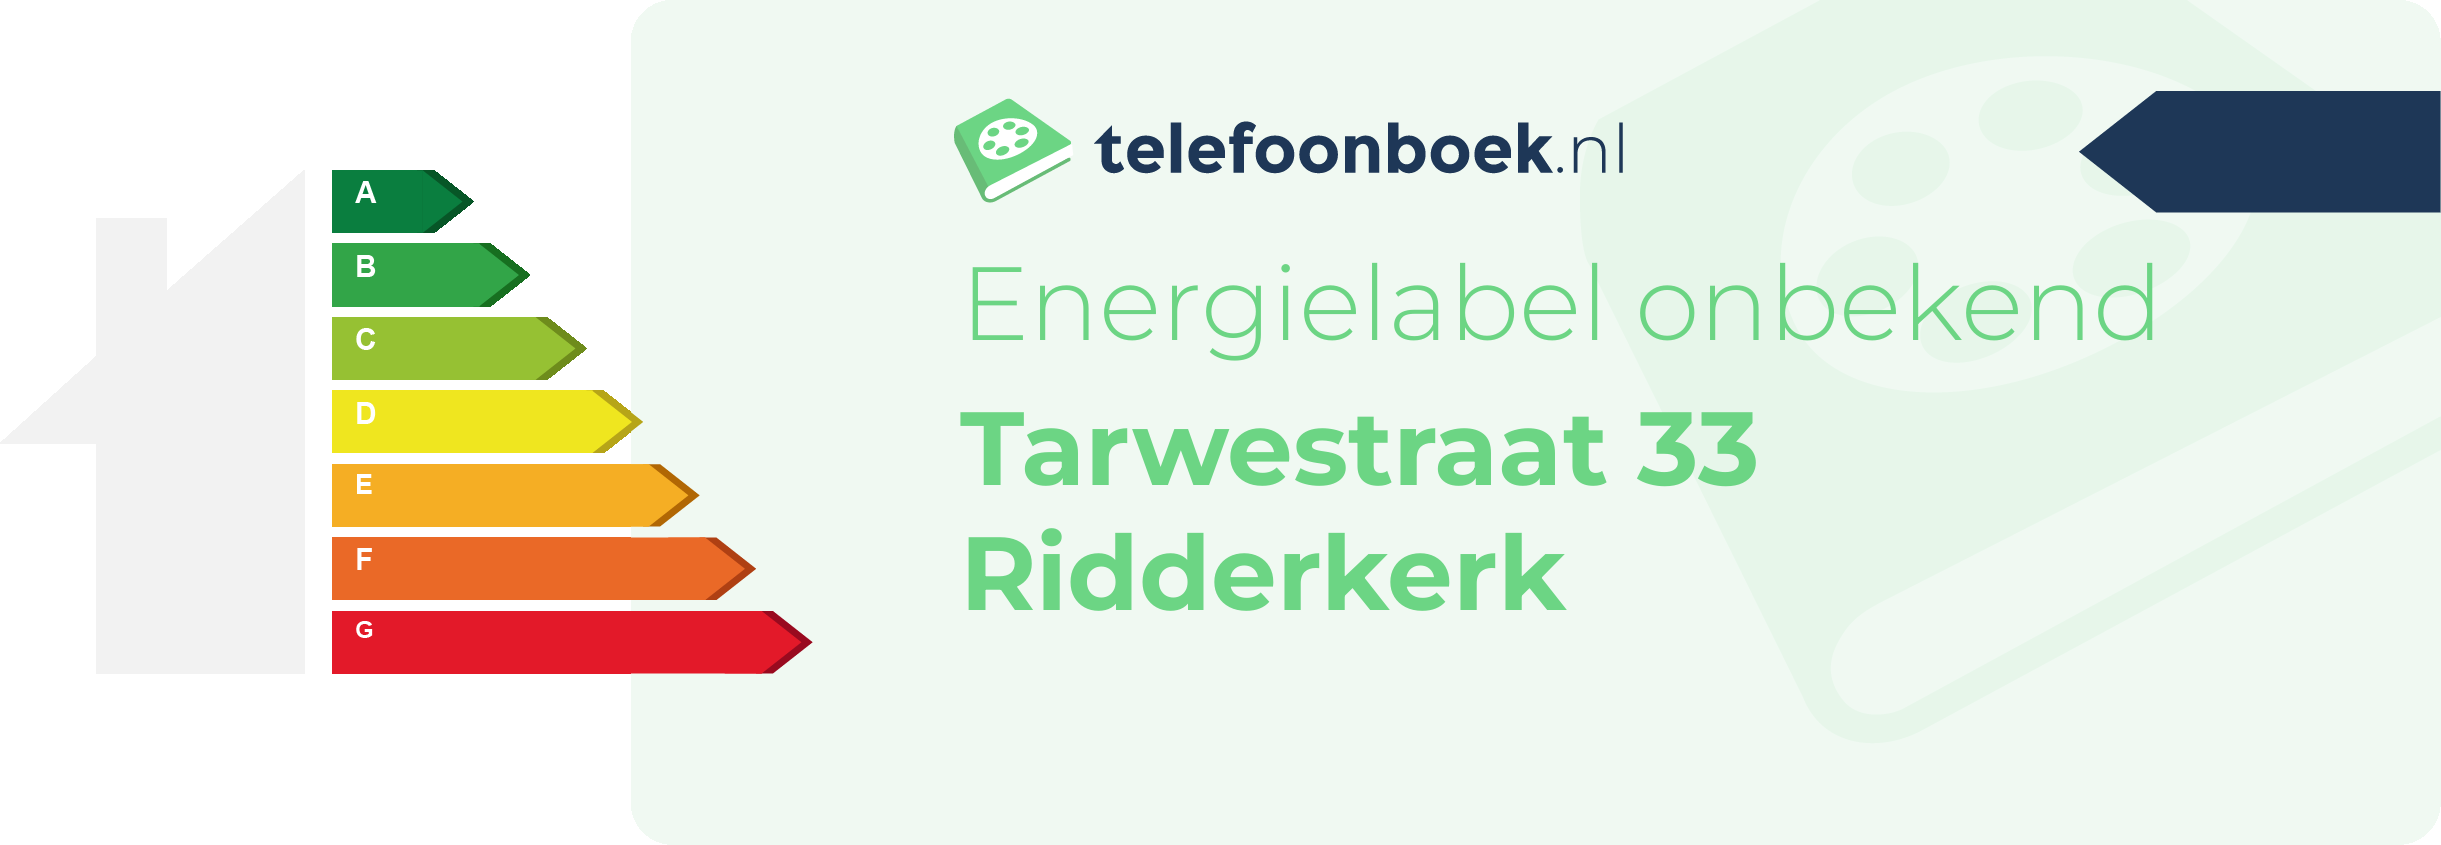 Energielabel Tarwestraat 33 Ridderkerk